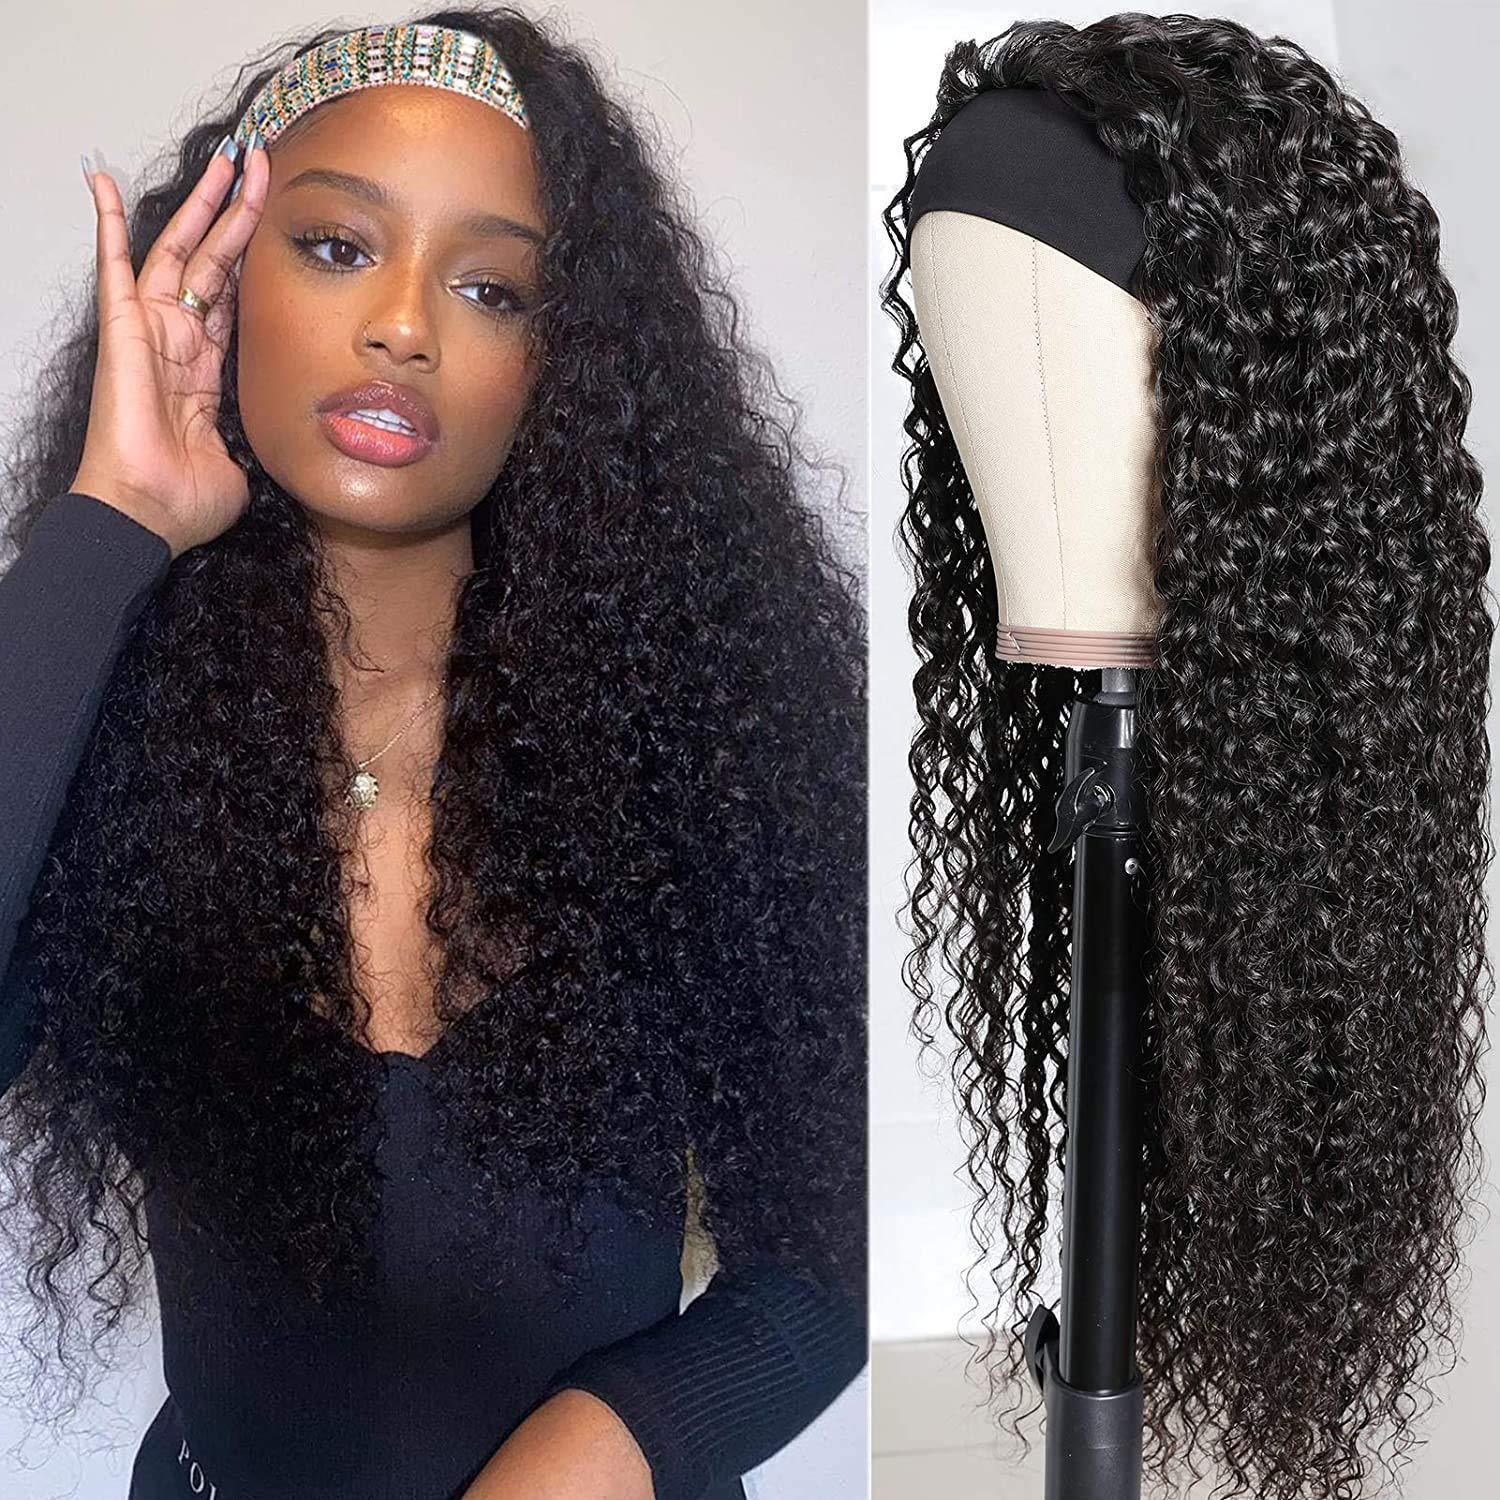 парики модные женские черные вьющиеся волосы удобные с высокотемпературным шелком